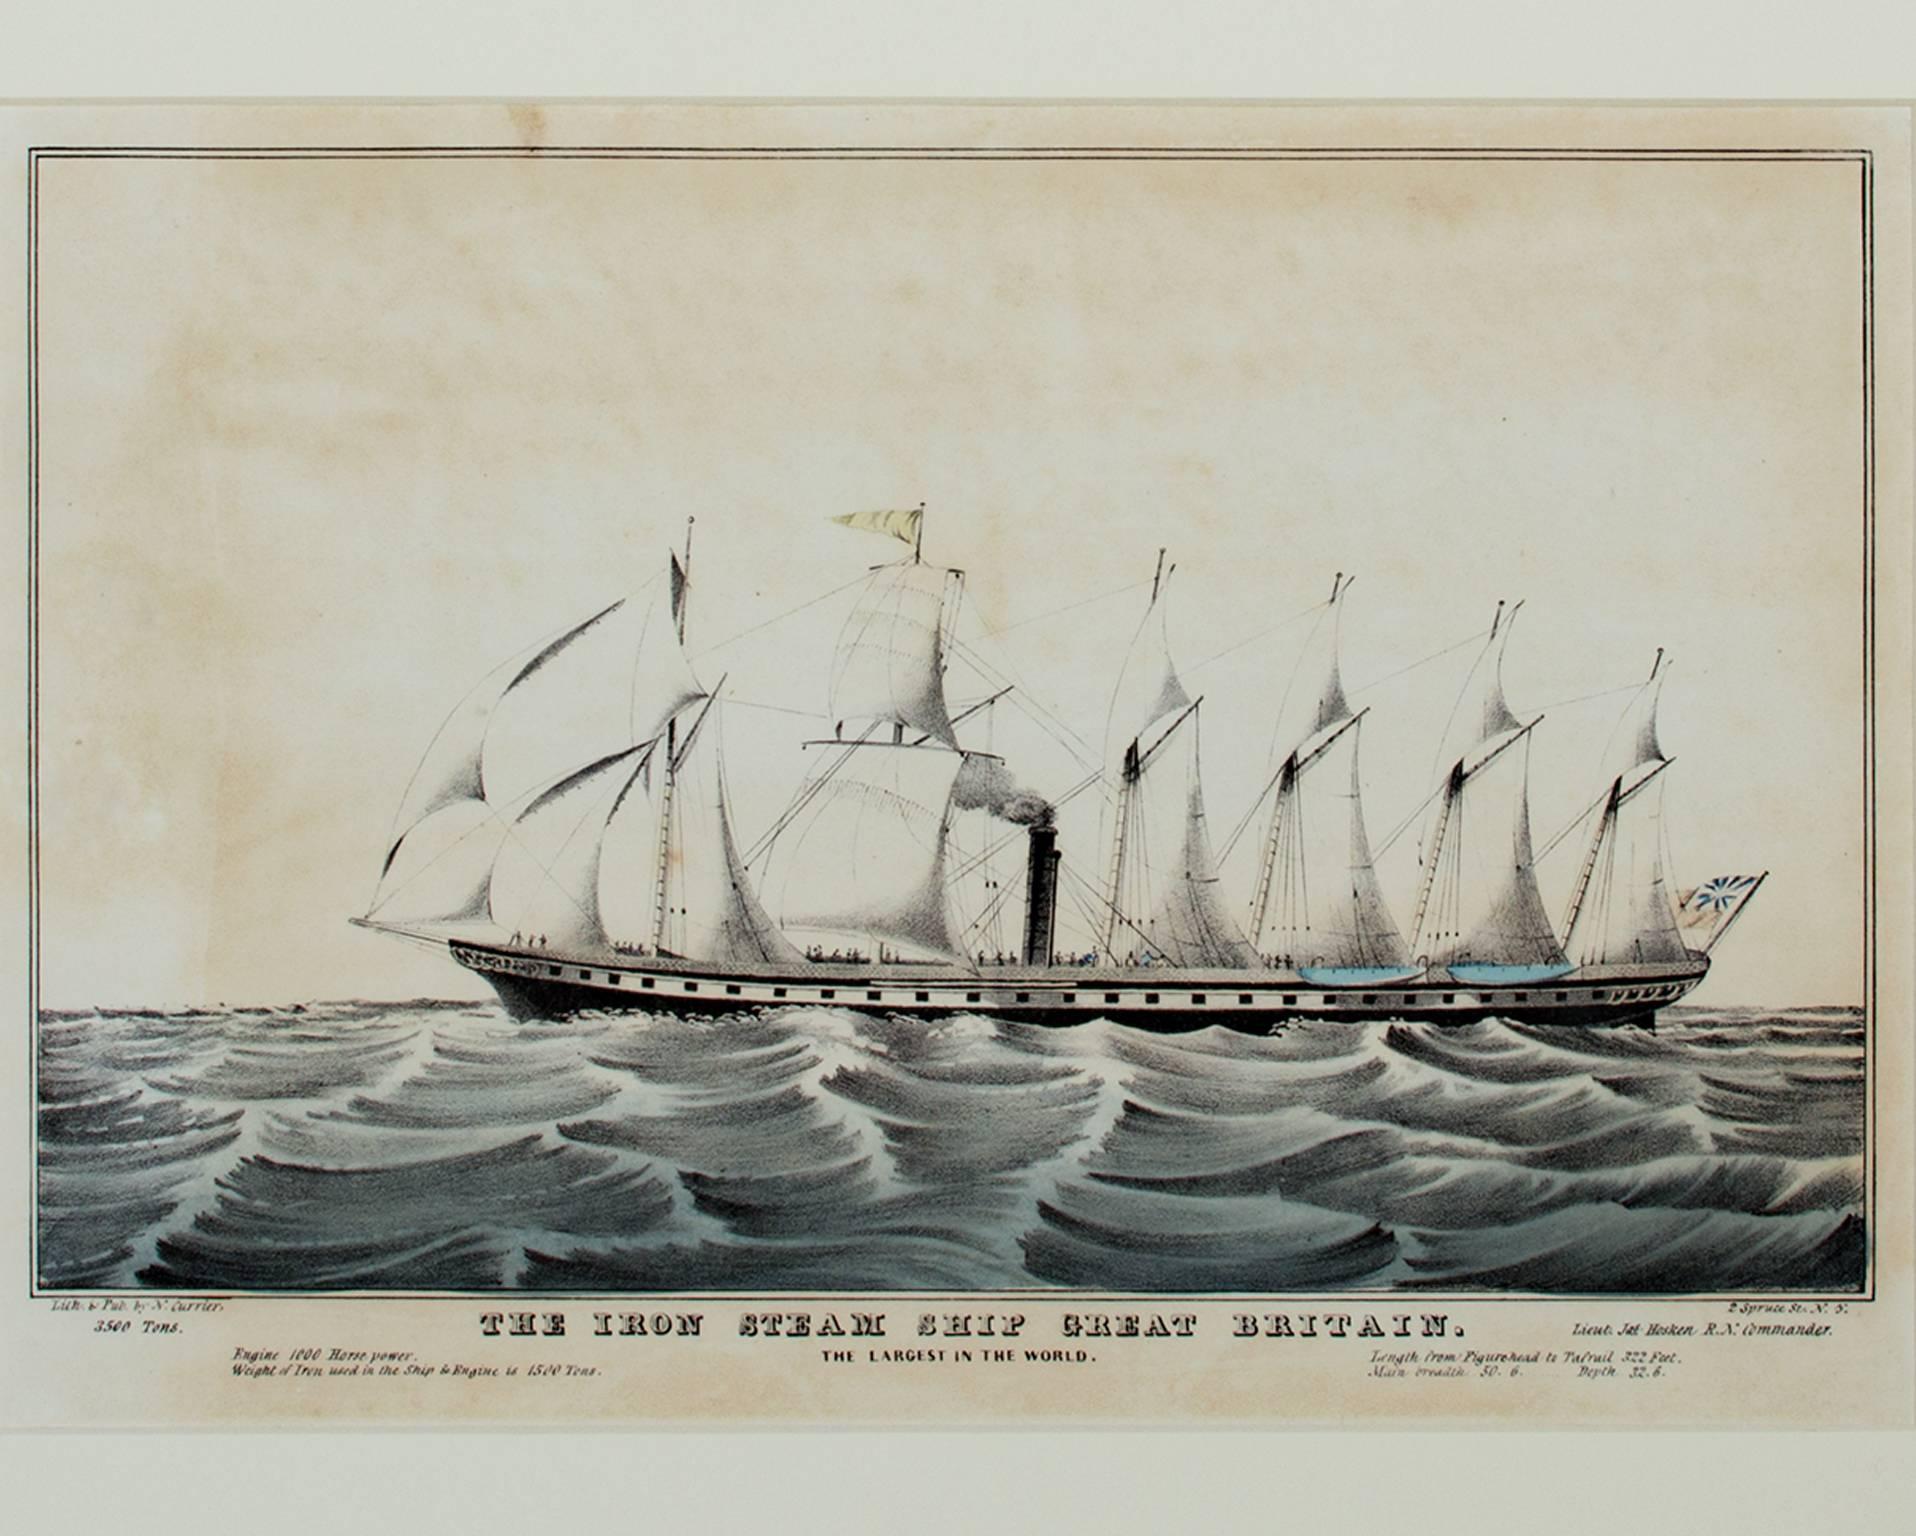 Currier & Ives Landscape Print - 19th century color lithograph seascape boat ship waves maritime landscape